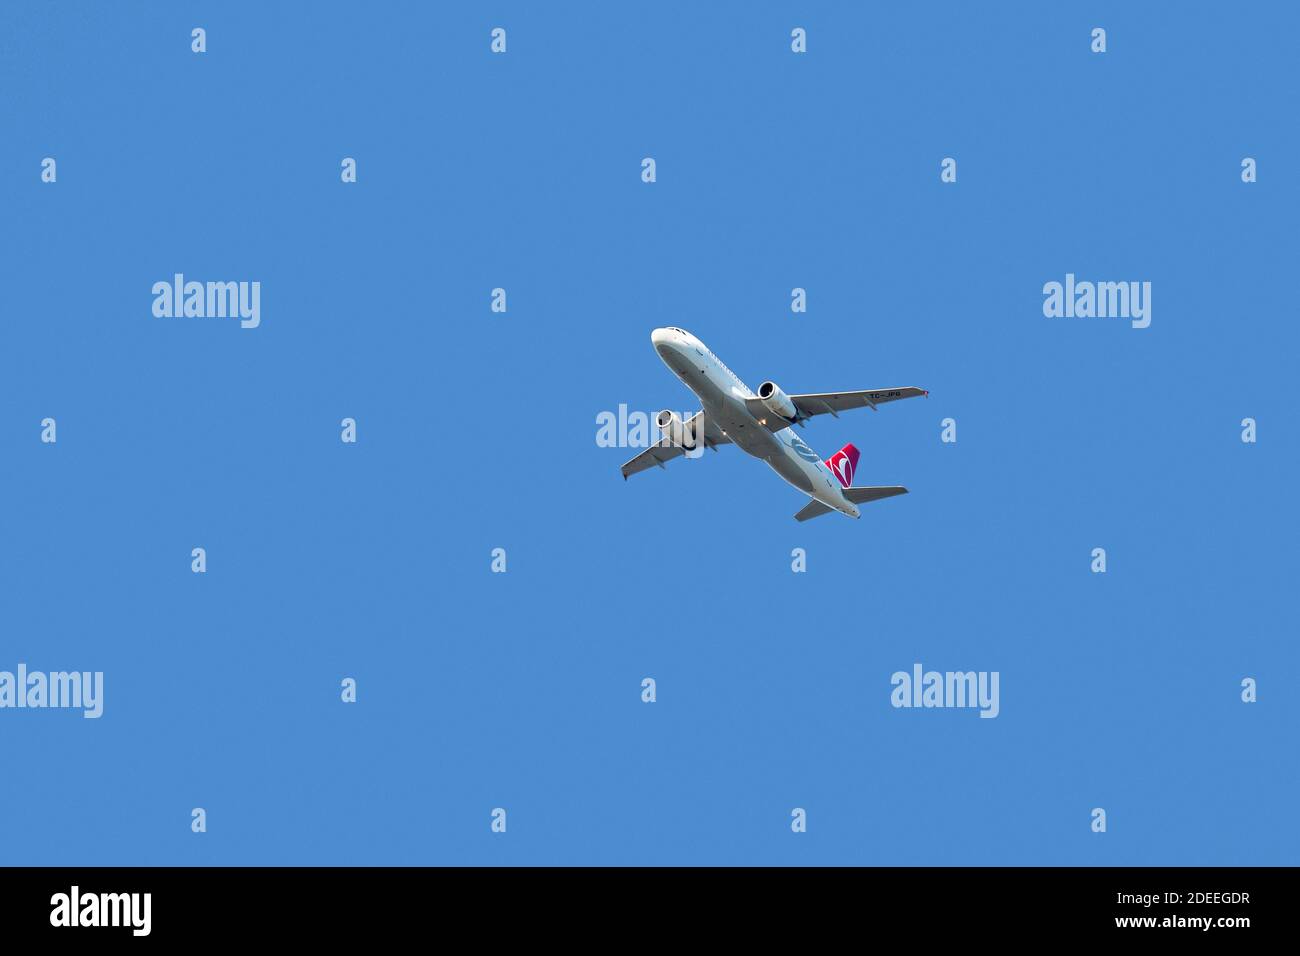 Airbus A320-232, avion à double moteur de passagers commerciaux à corps étroit de Turkish Airlines en vol dans un ciel bleu Banque D'Images